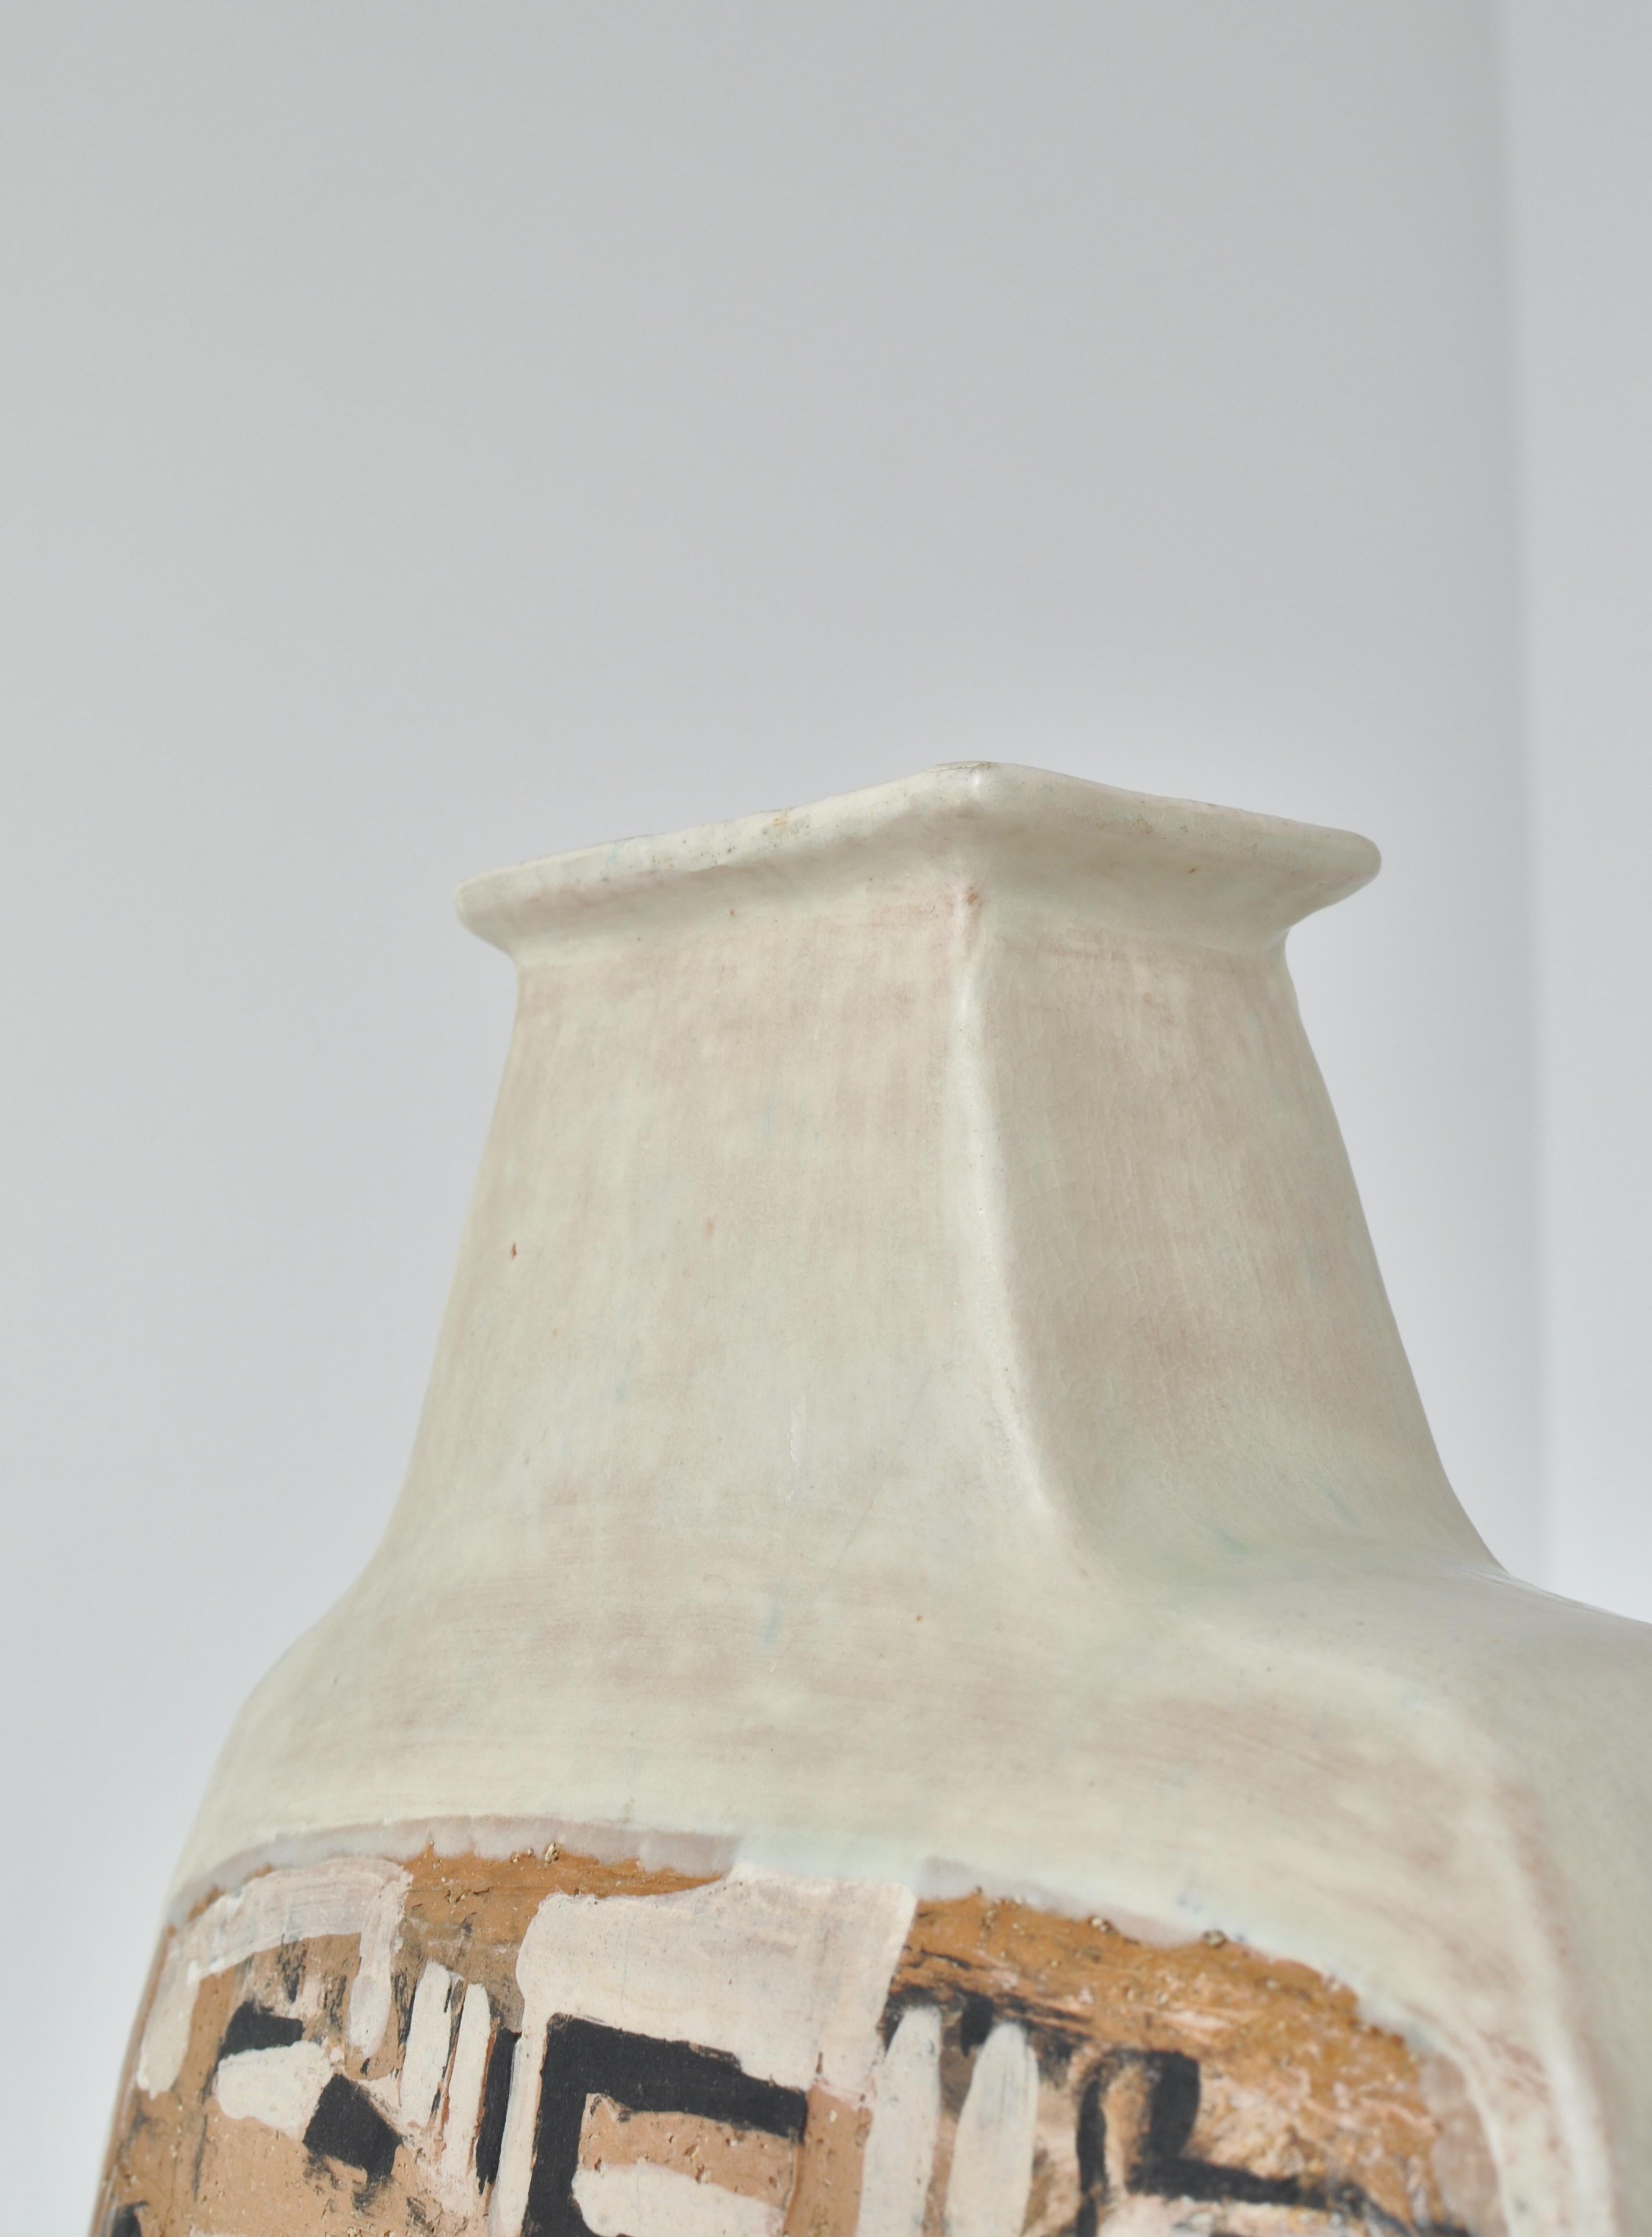 Earthenware Danish Modern White Ceramics Floor Vase by Hagedorn-Olsen, Own Studio, 1961